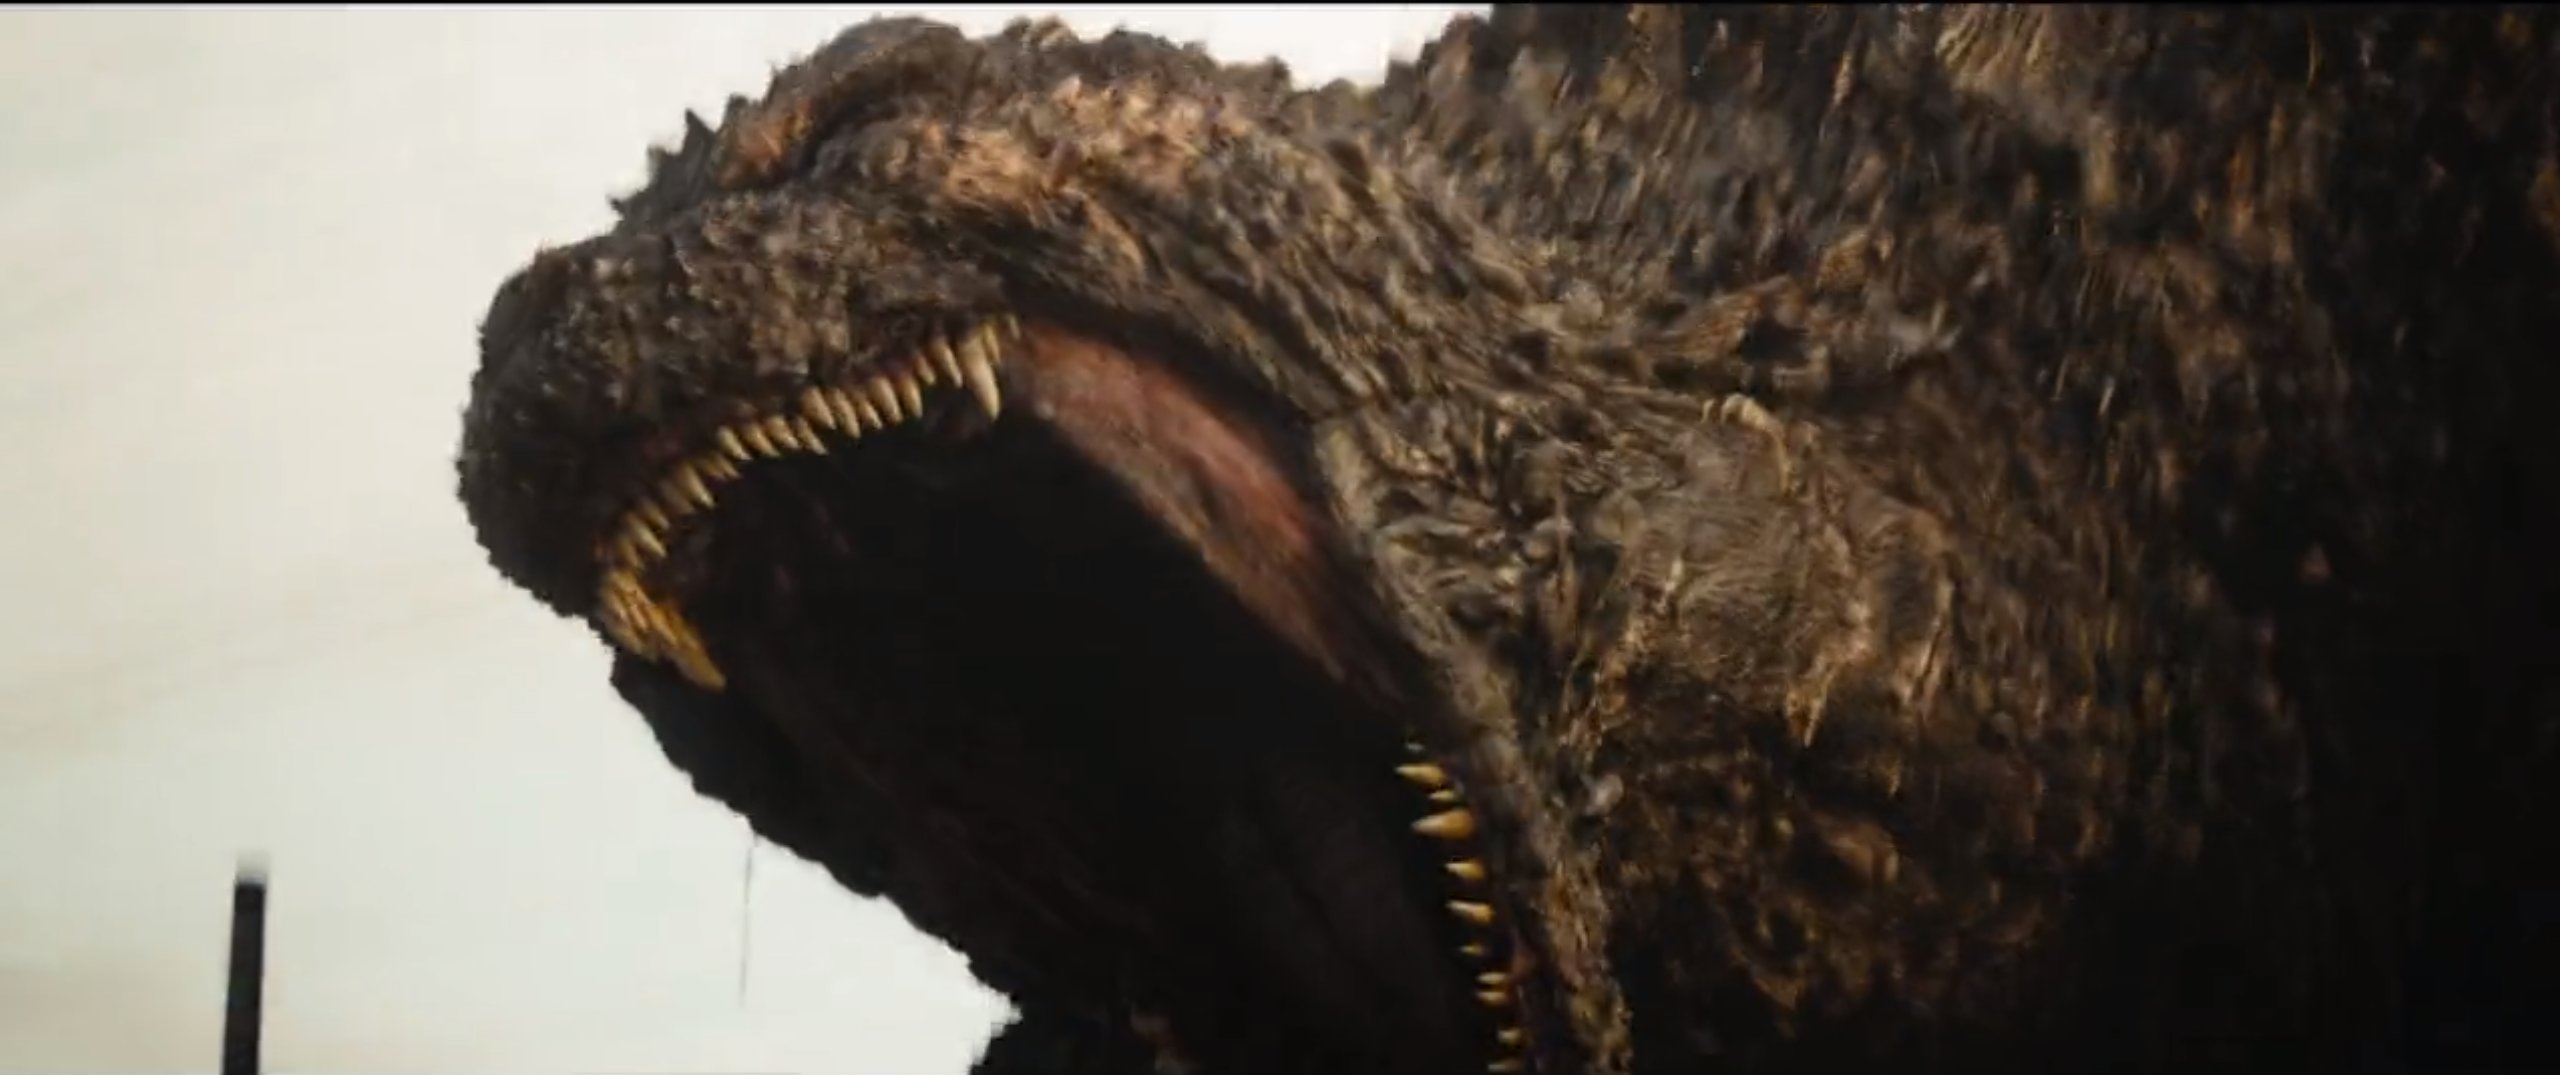 Jadwal tayang film Godzilla terbaru